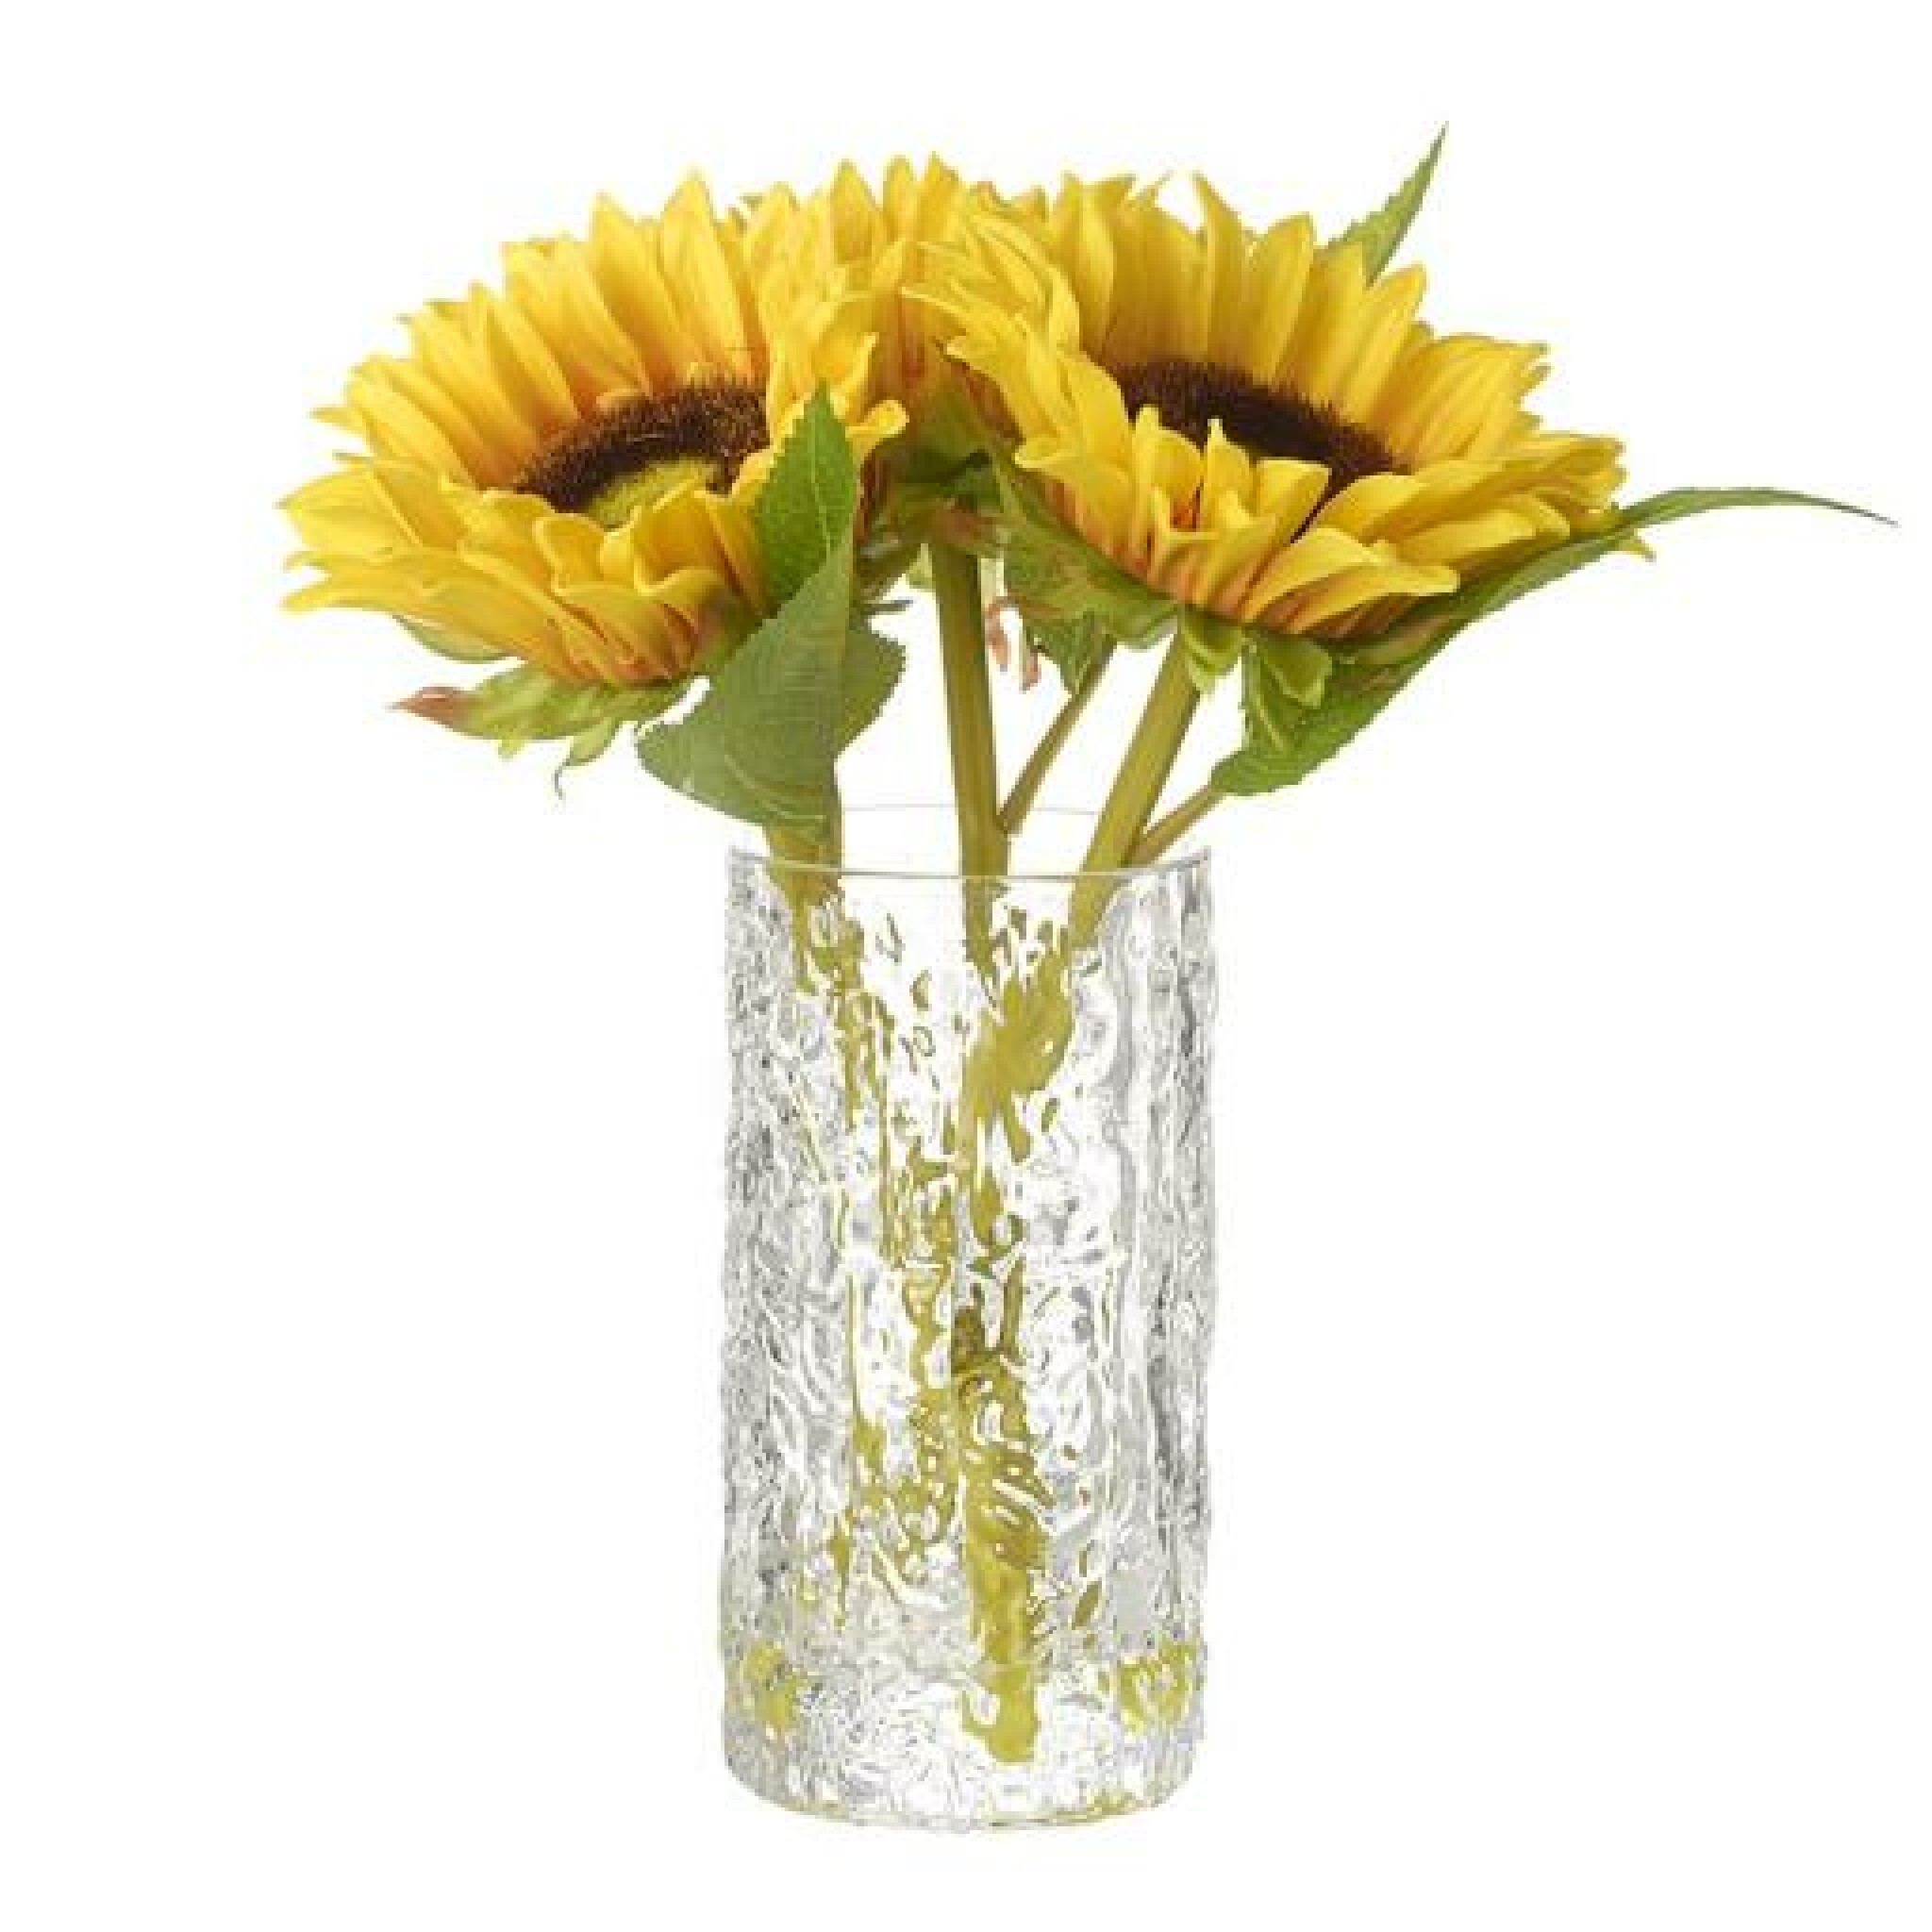 Sunflower Vase by Gisela Graham.jpg